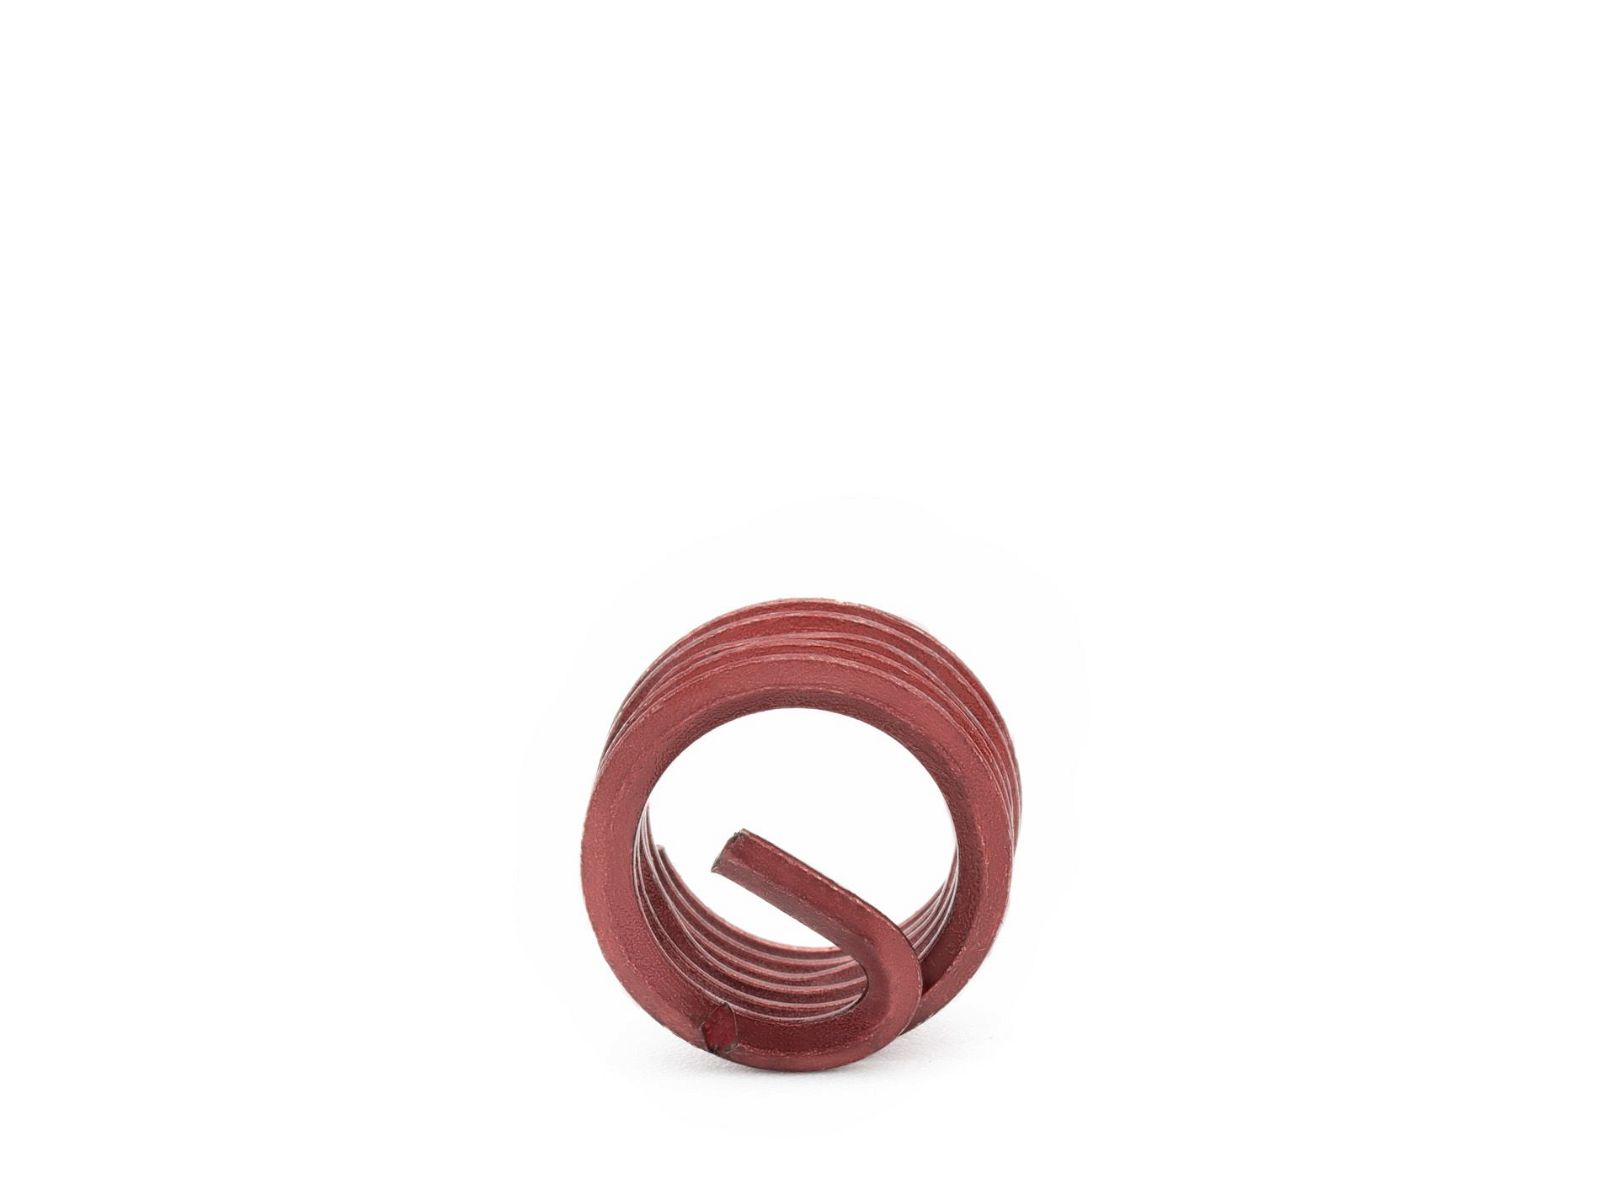 BaerCoil Wire Thread Inserts UNF No. 10 x 32 - 1.0 D (4.83 mm) - screw grip (screw locking) - 100 pcs.